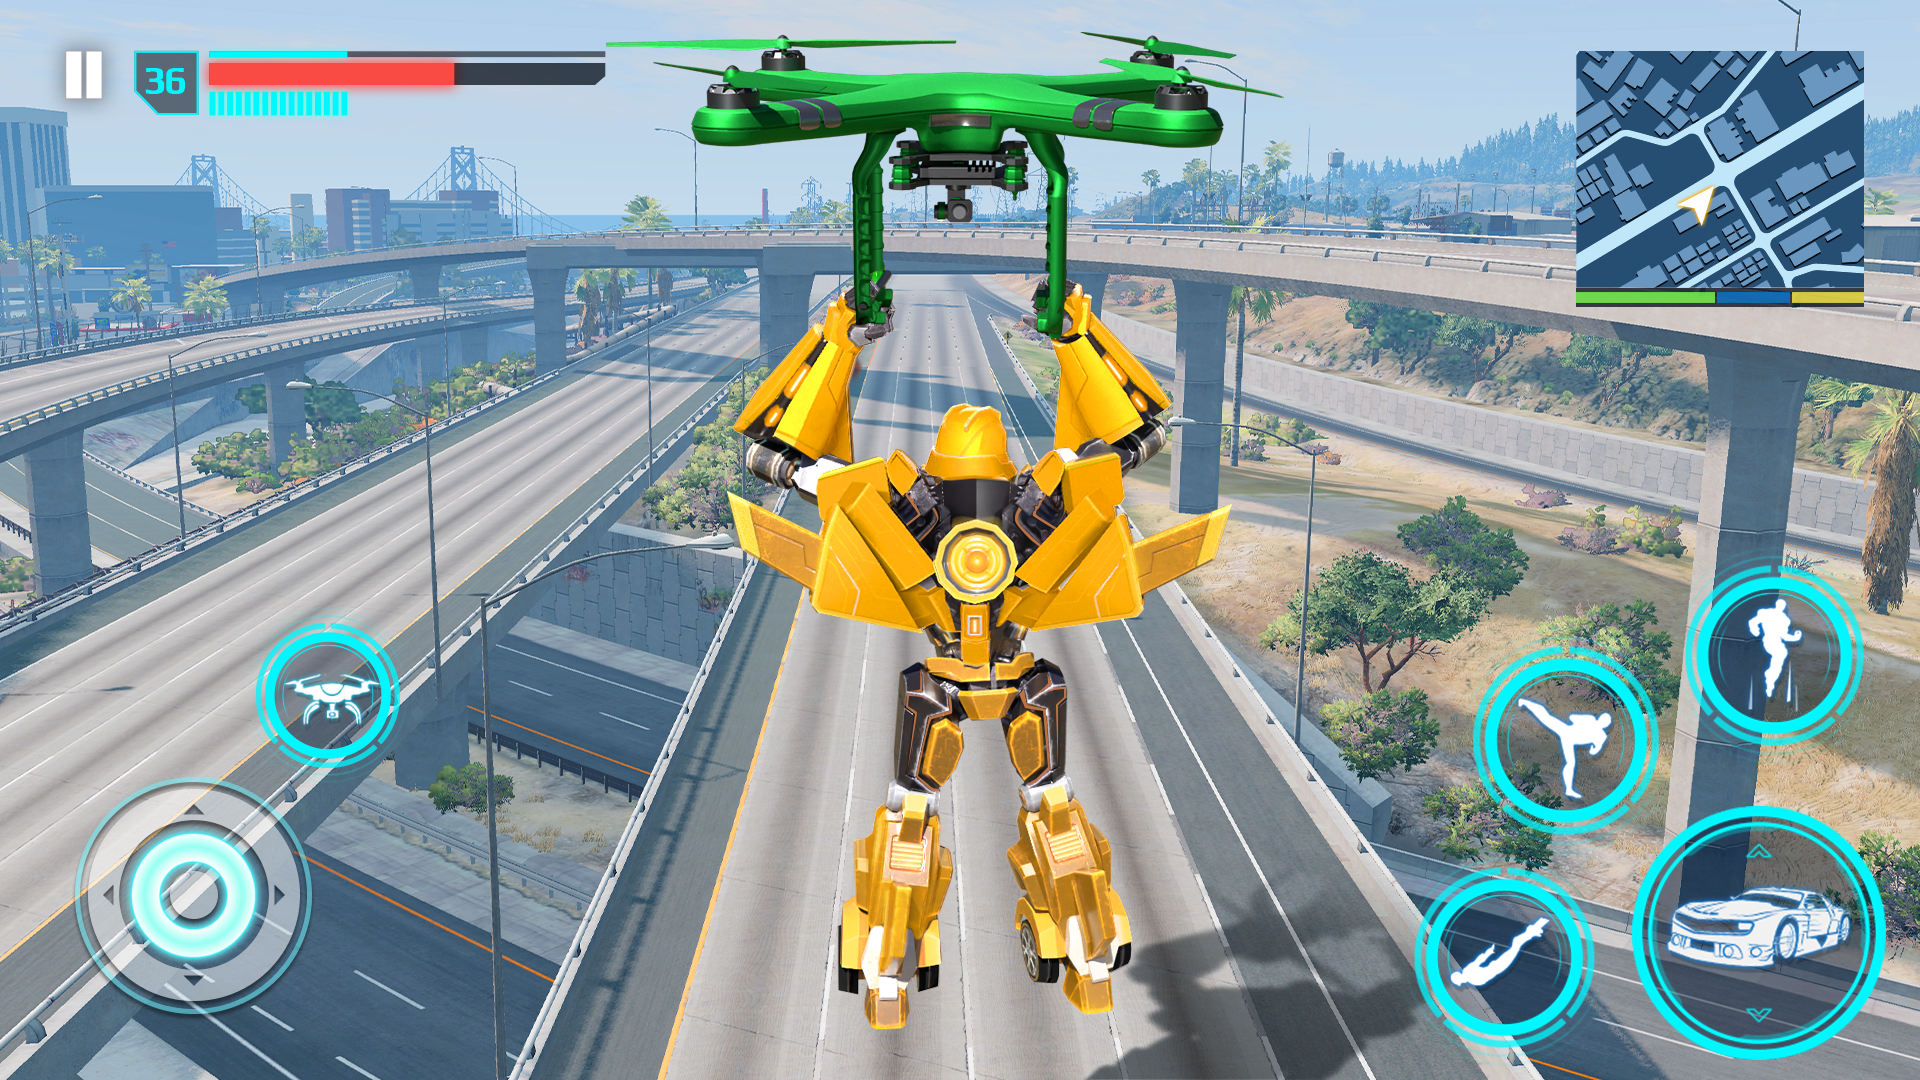 Jogos de transformação do robô Dino versão móvel andróide iOS apk